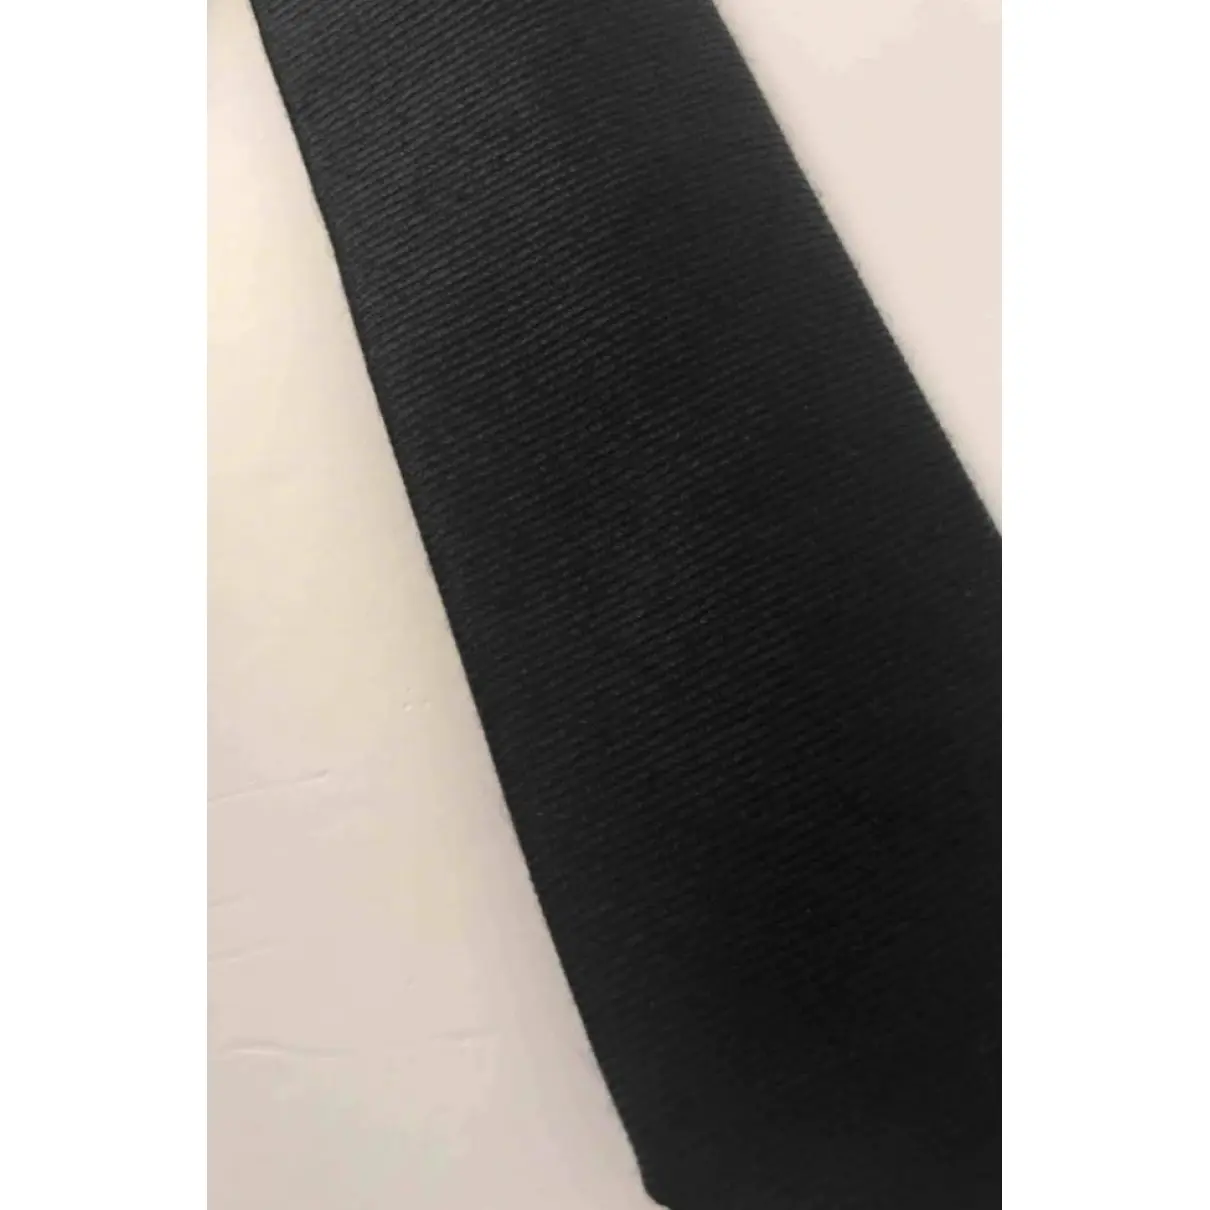 Yves Saint Laurent Wool tie for sale